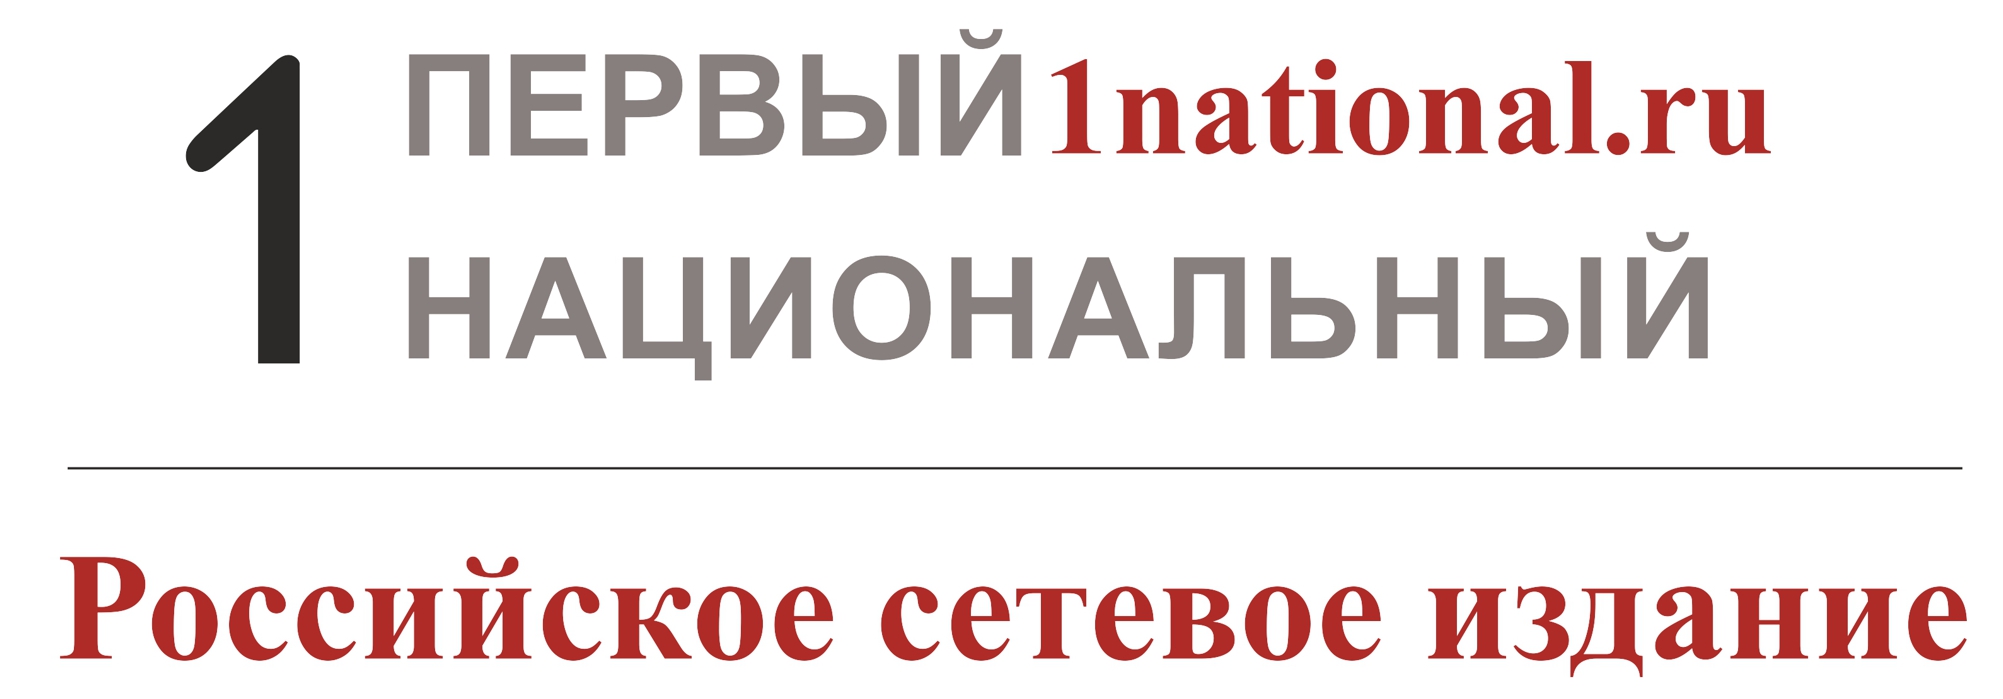 Российское сетевое издание «Первый национальный»